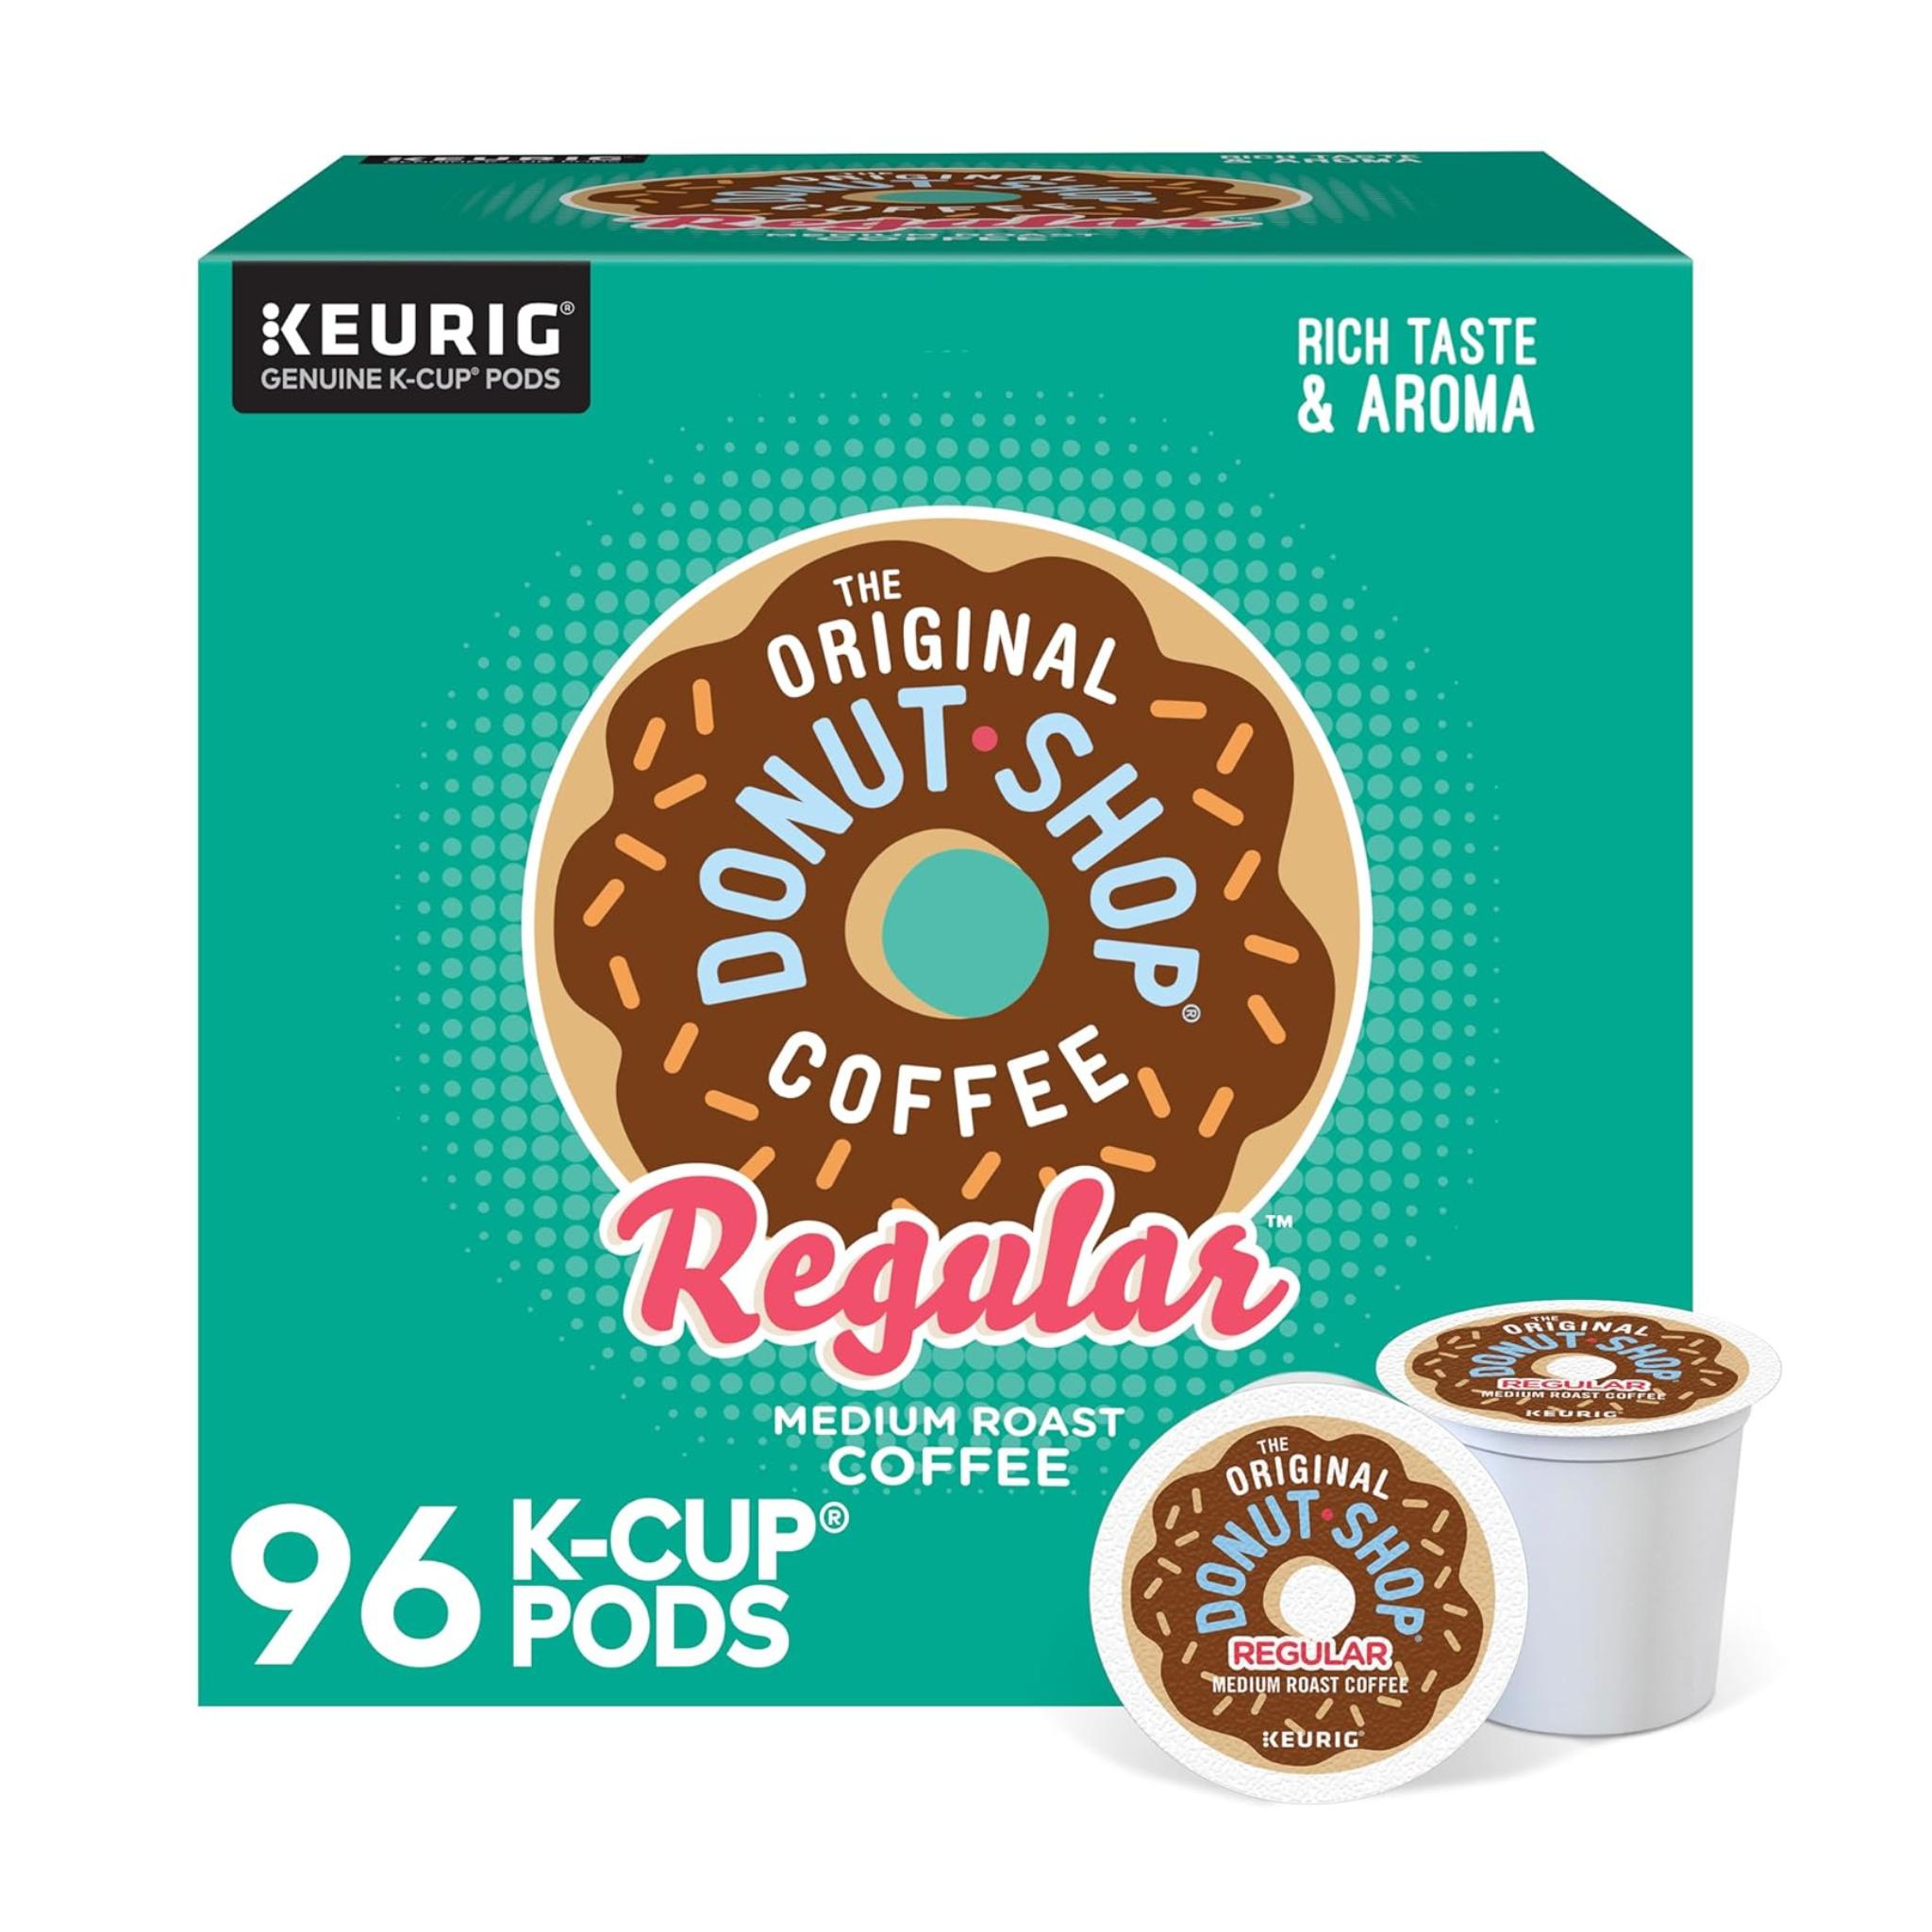 The Original Donut Shop Regular Keurig Single-Serve K-Cups, 96 Count